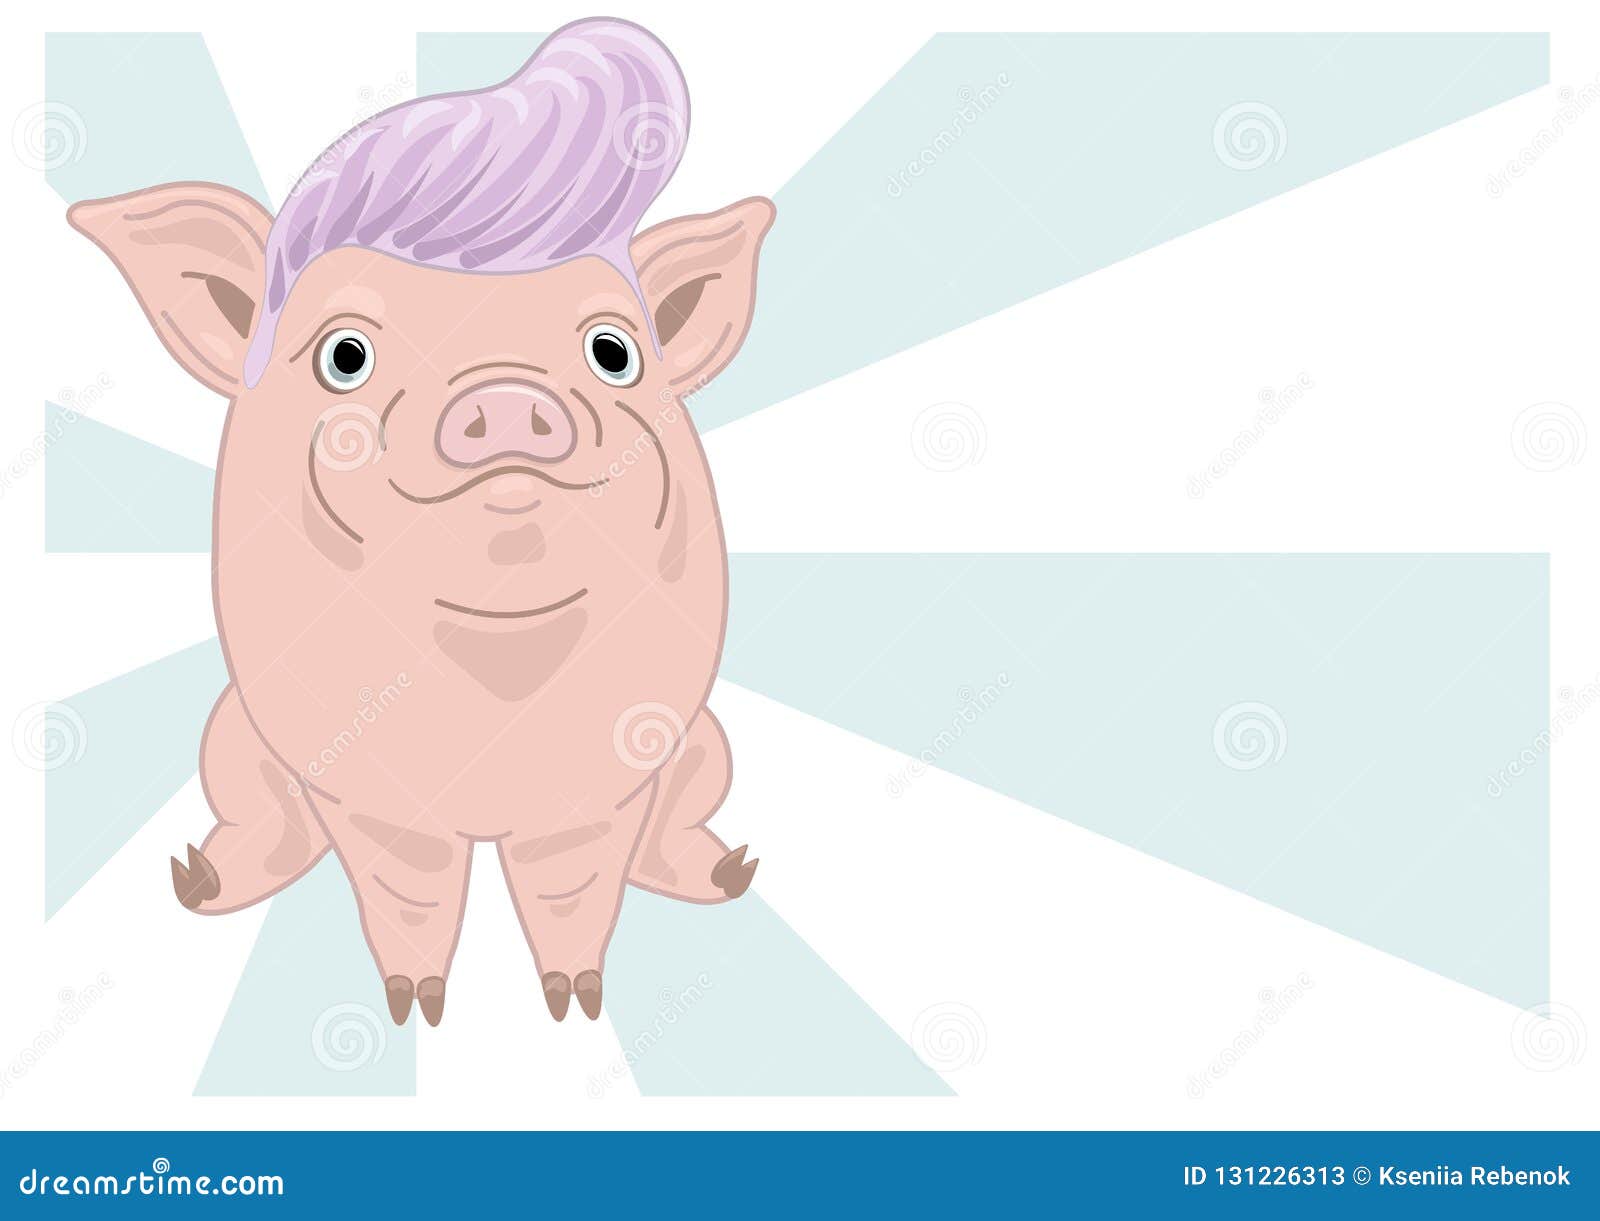 3955 Pig Fir Images Stock Photos  Vectors  Shutterstock